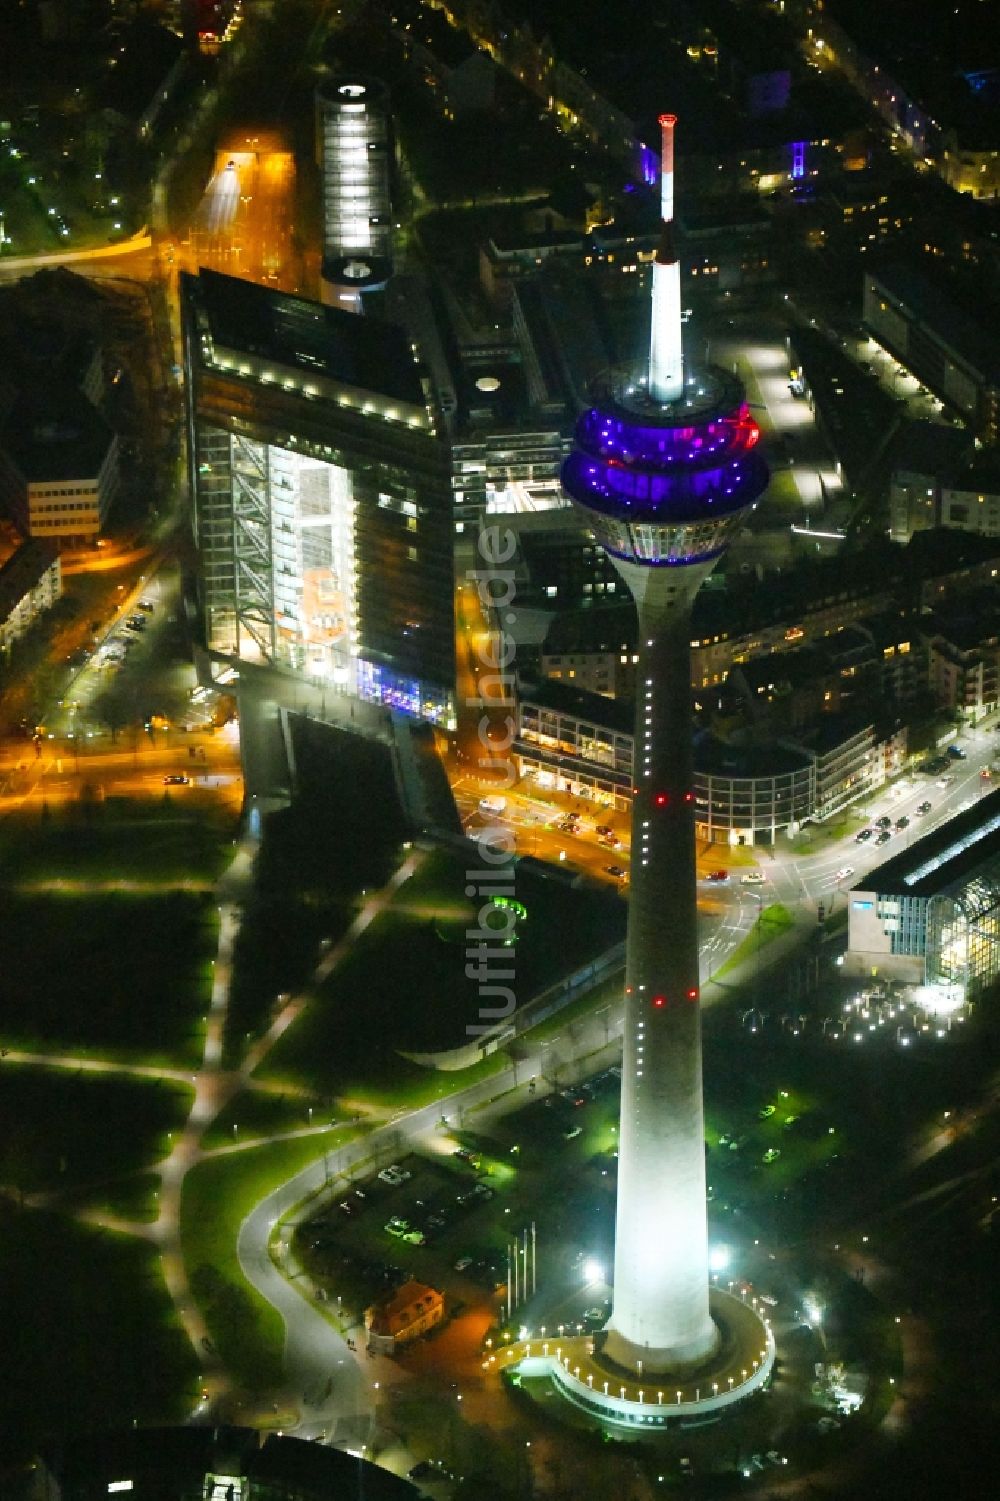 Nachtluftbild Düsseldorf - Nachtluftbild des Fernsehturm Rheinturm in Düsseldorf im Bundesland Nordrhein-Westfalen